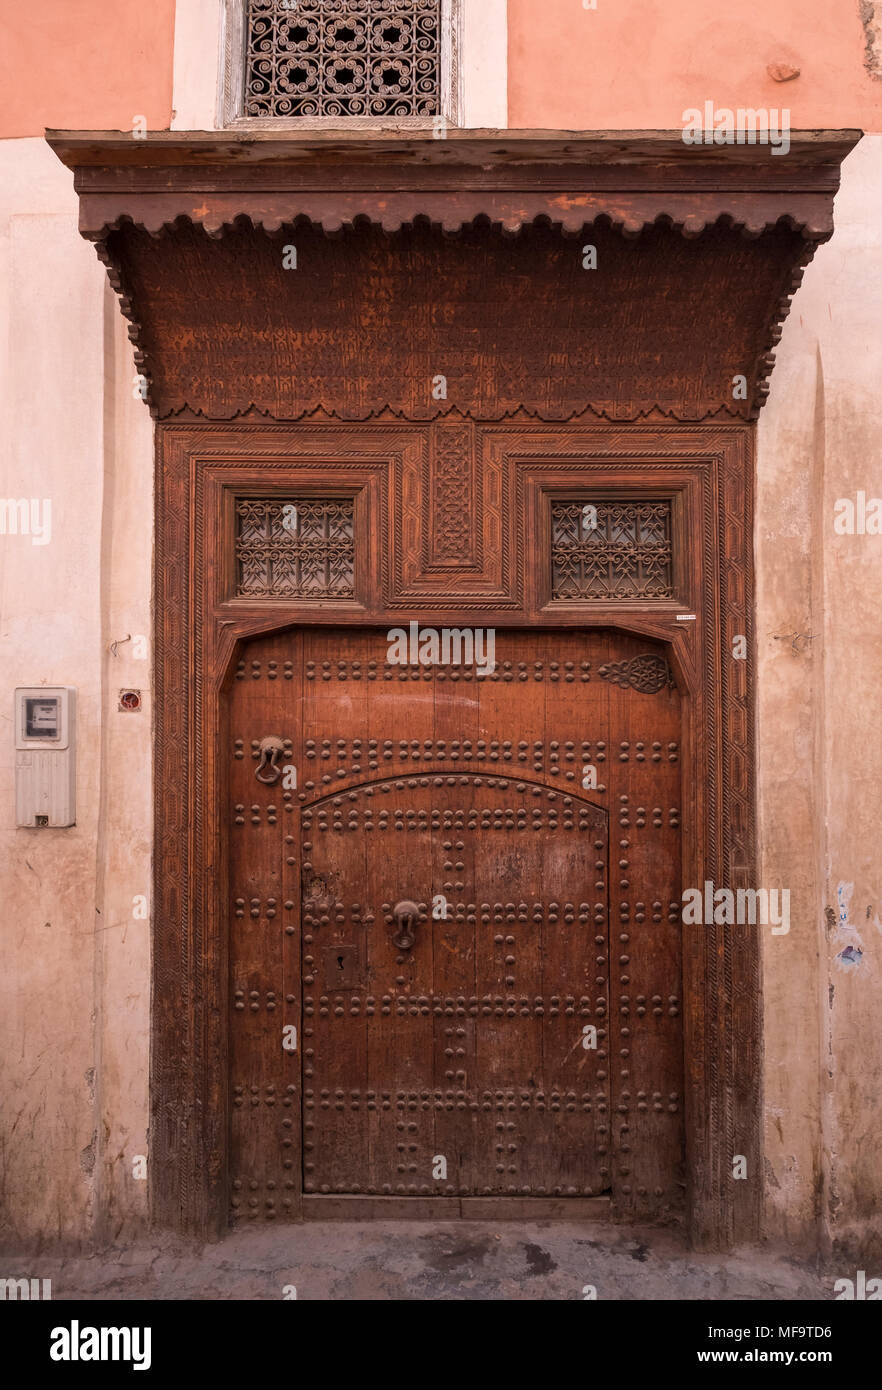 Riad typique de porte d'entrée dans les petites rues de Marrakech, Marrakech, Maroc Banque D'Images